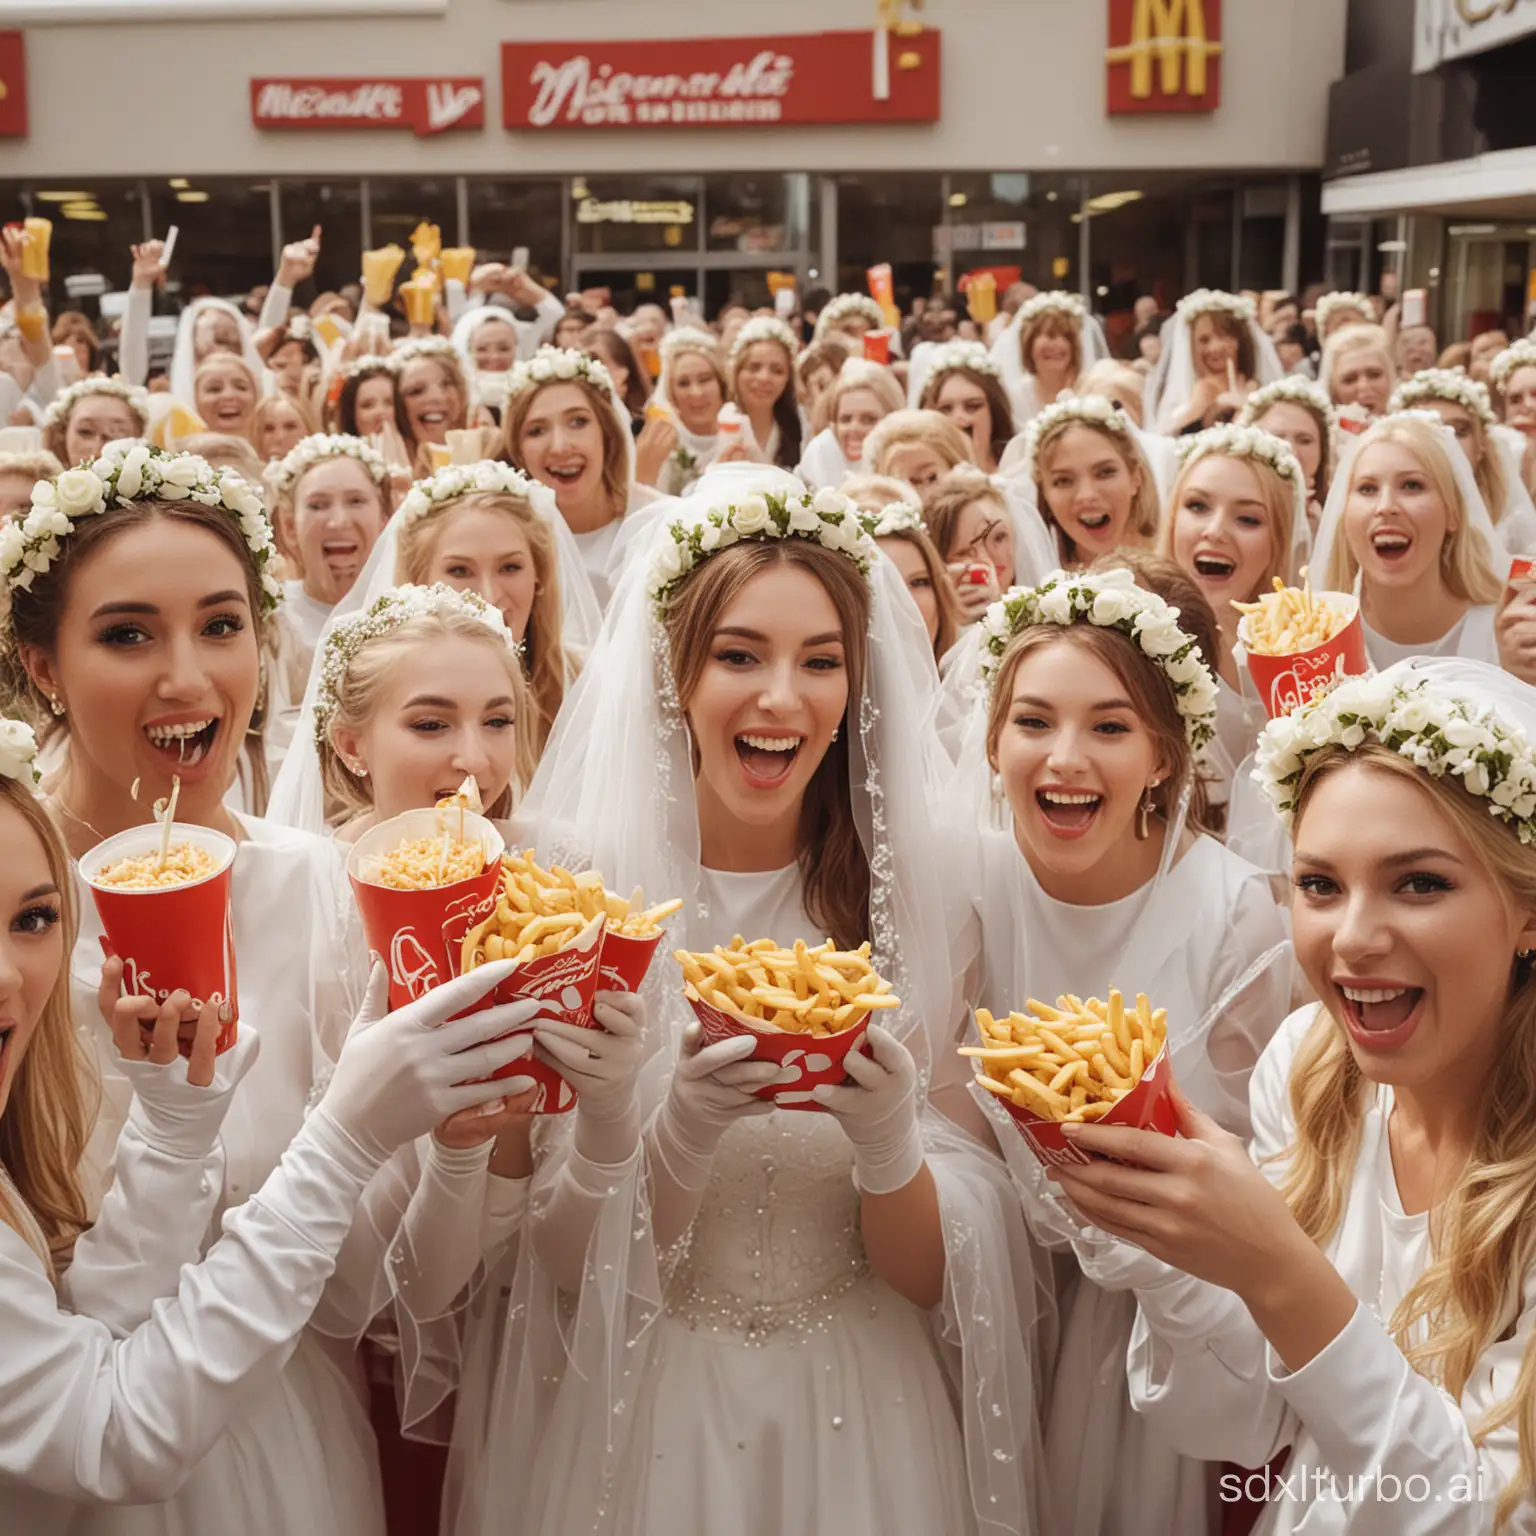 Multidão de noivas de véu e grinalda e luva branca comendo Big Mac batata frita coca cola juntas no mcdonalds